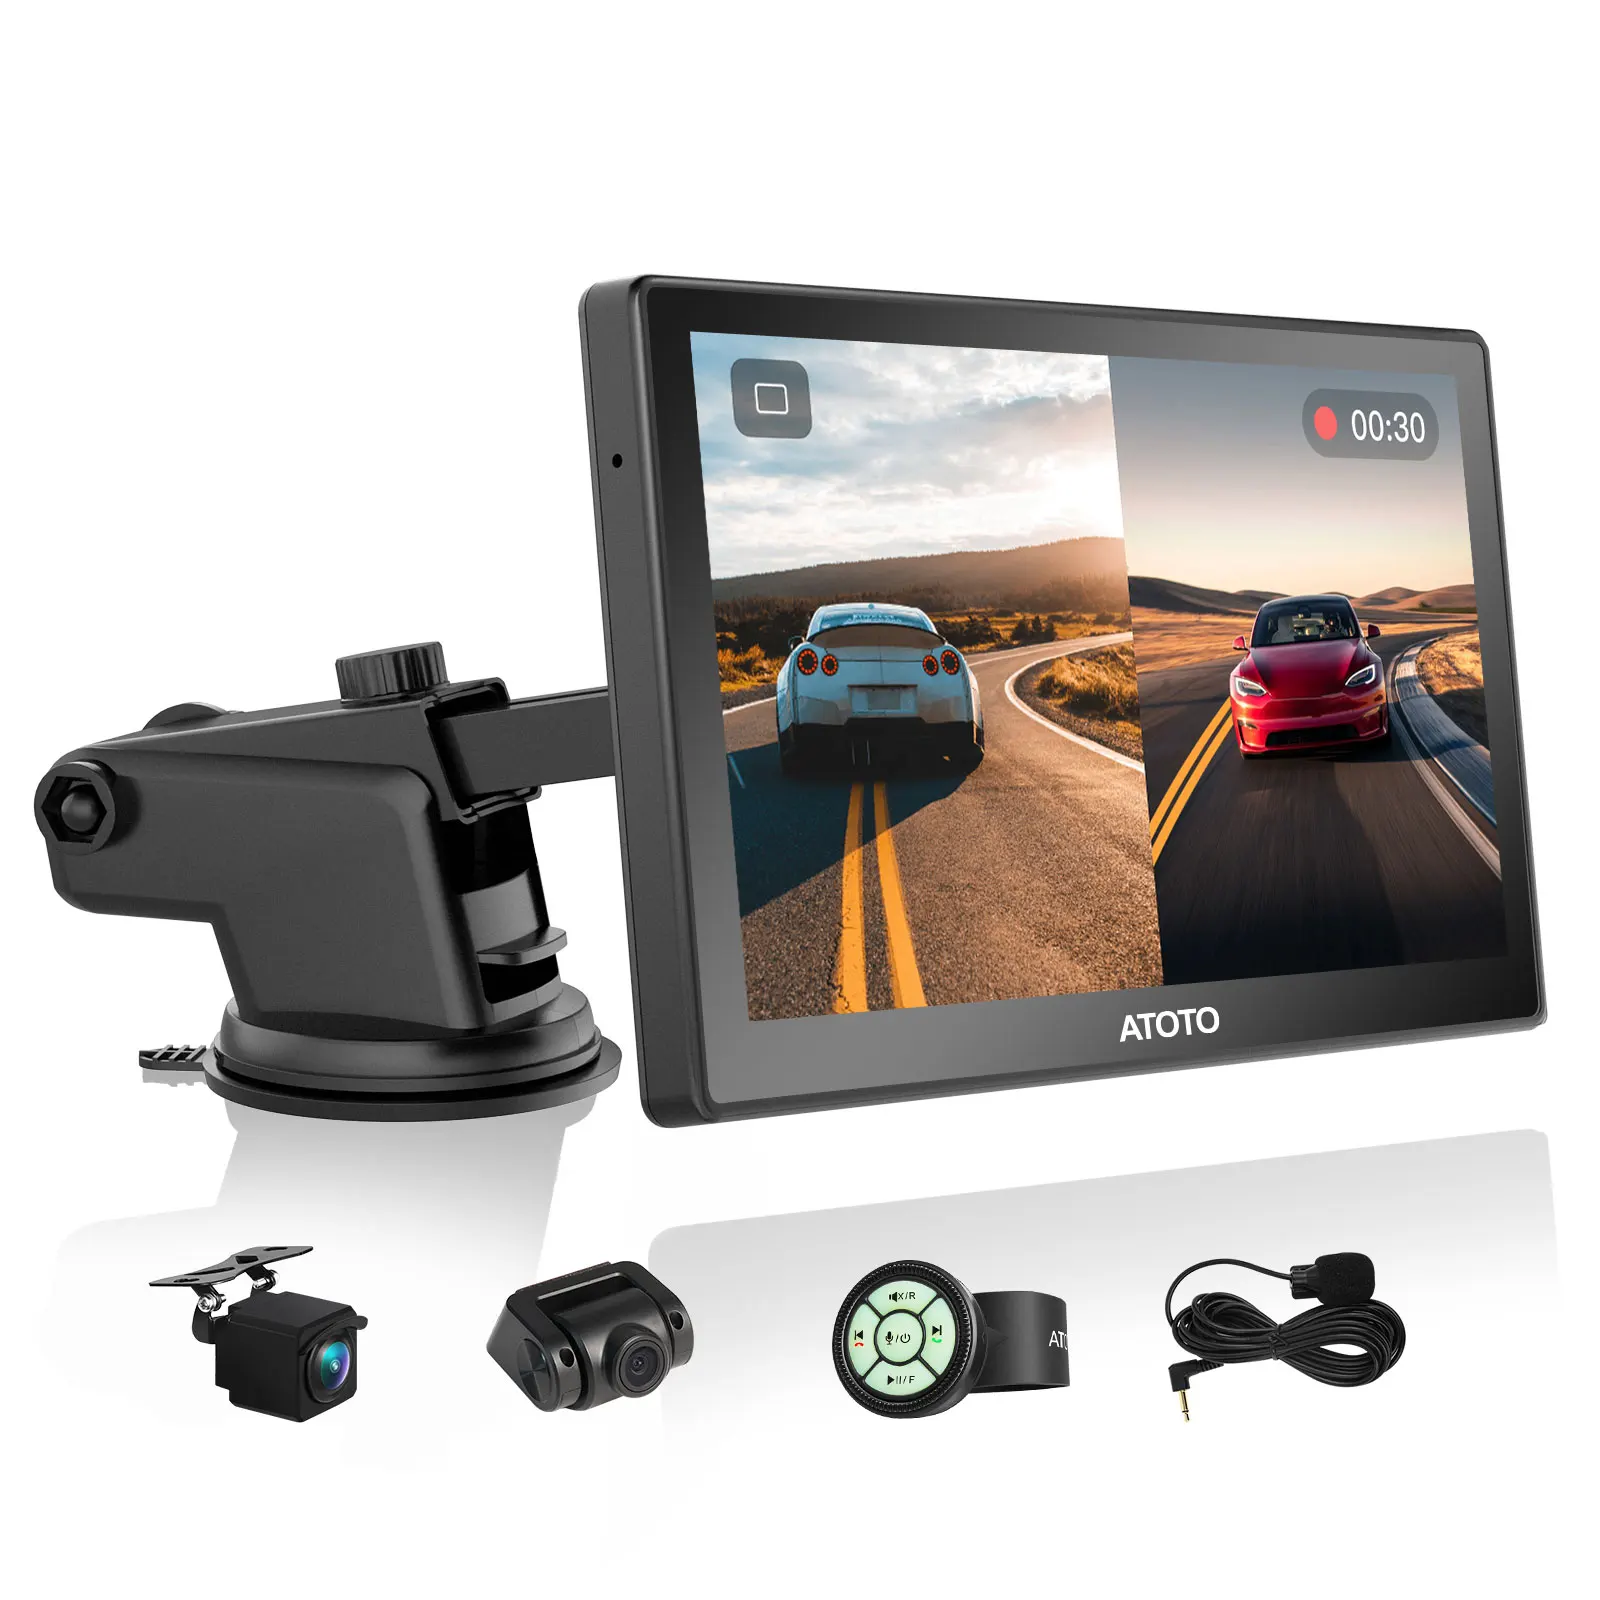 ATOTO P8 Portable Car Stereo Automatic Multimedia Player w/ Remote Control